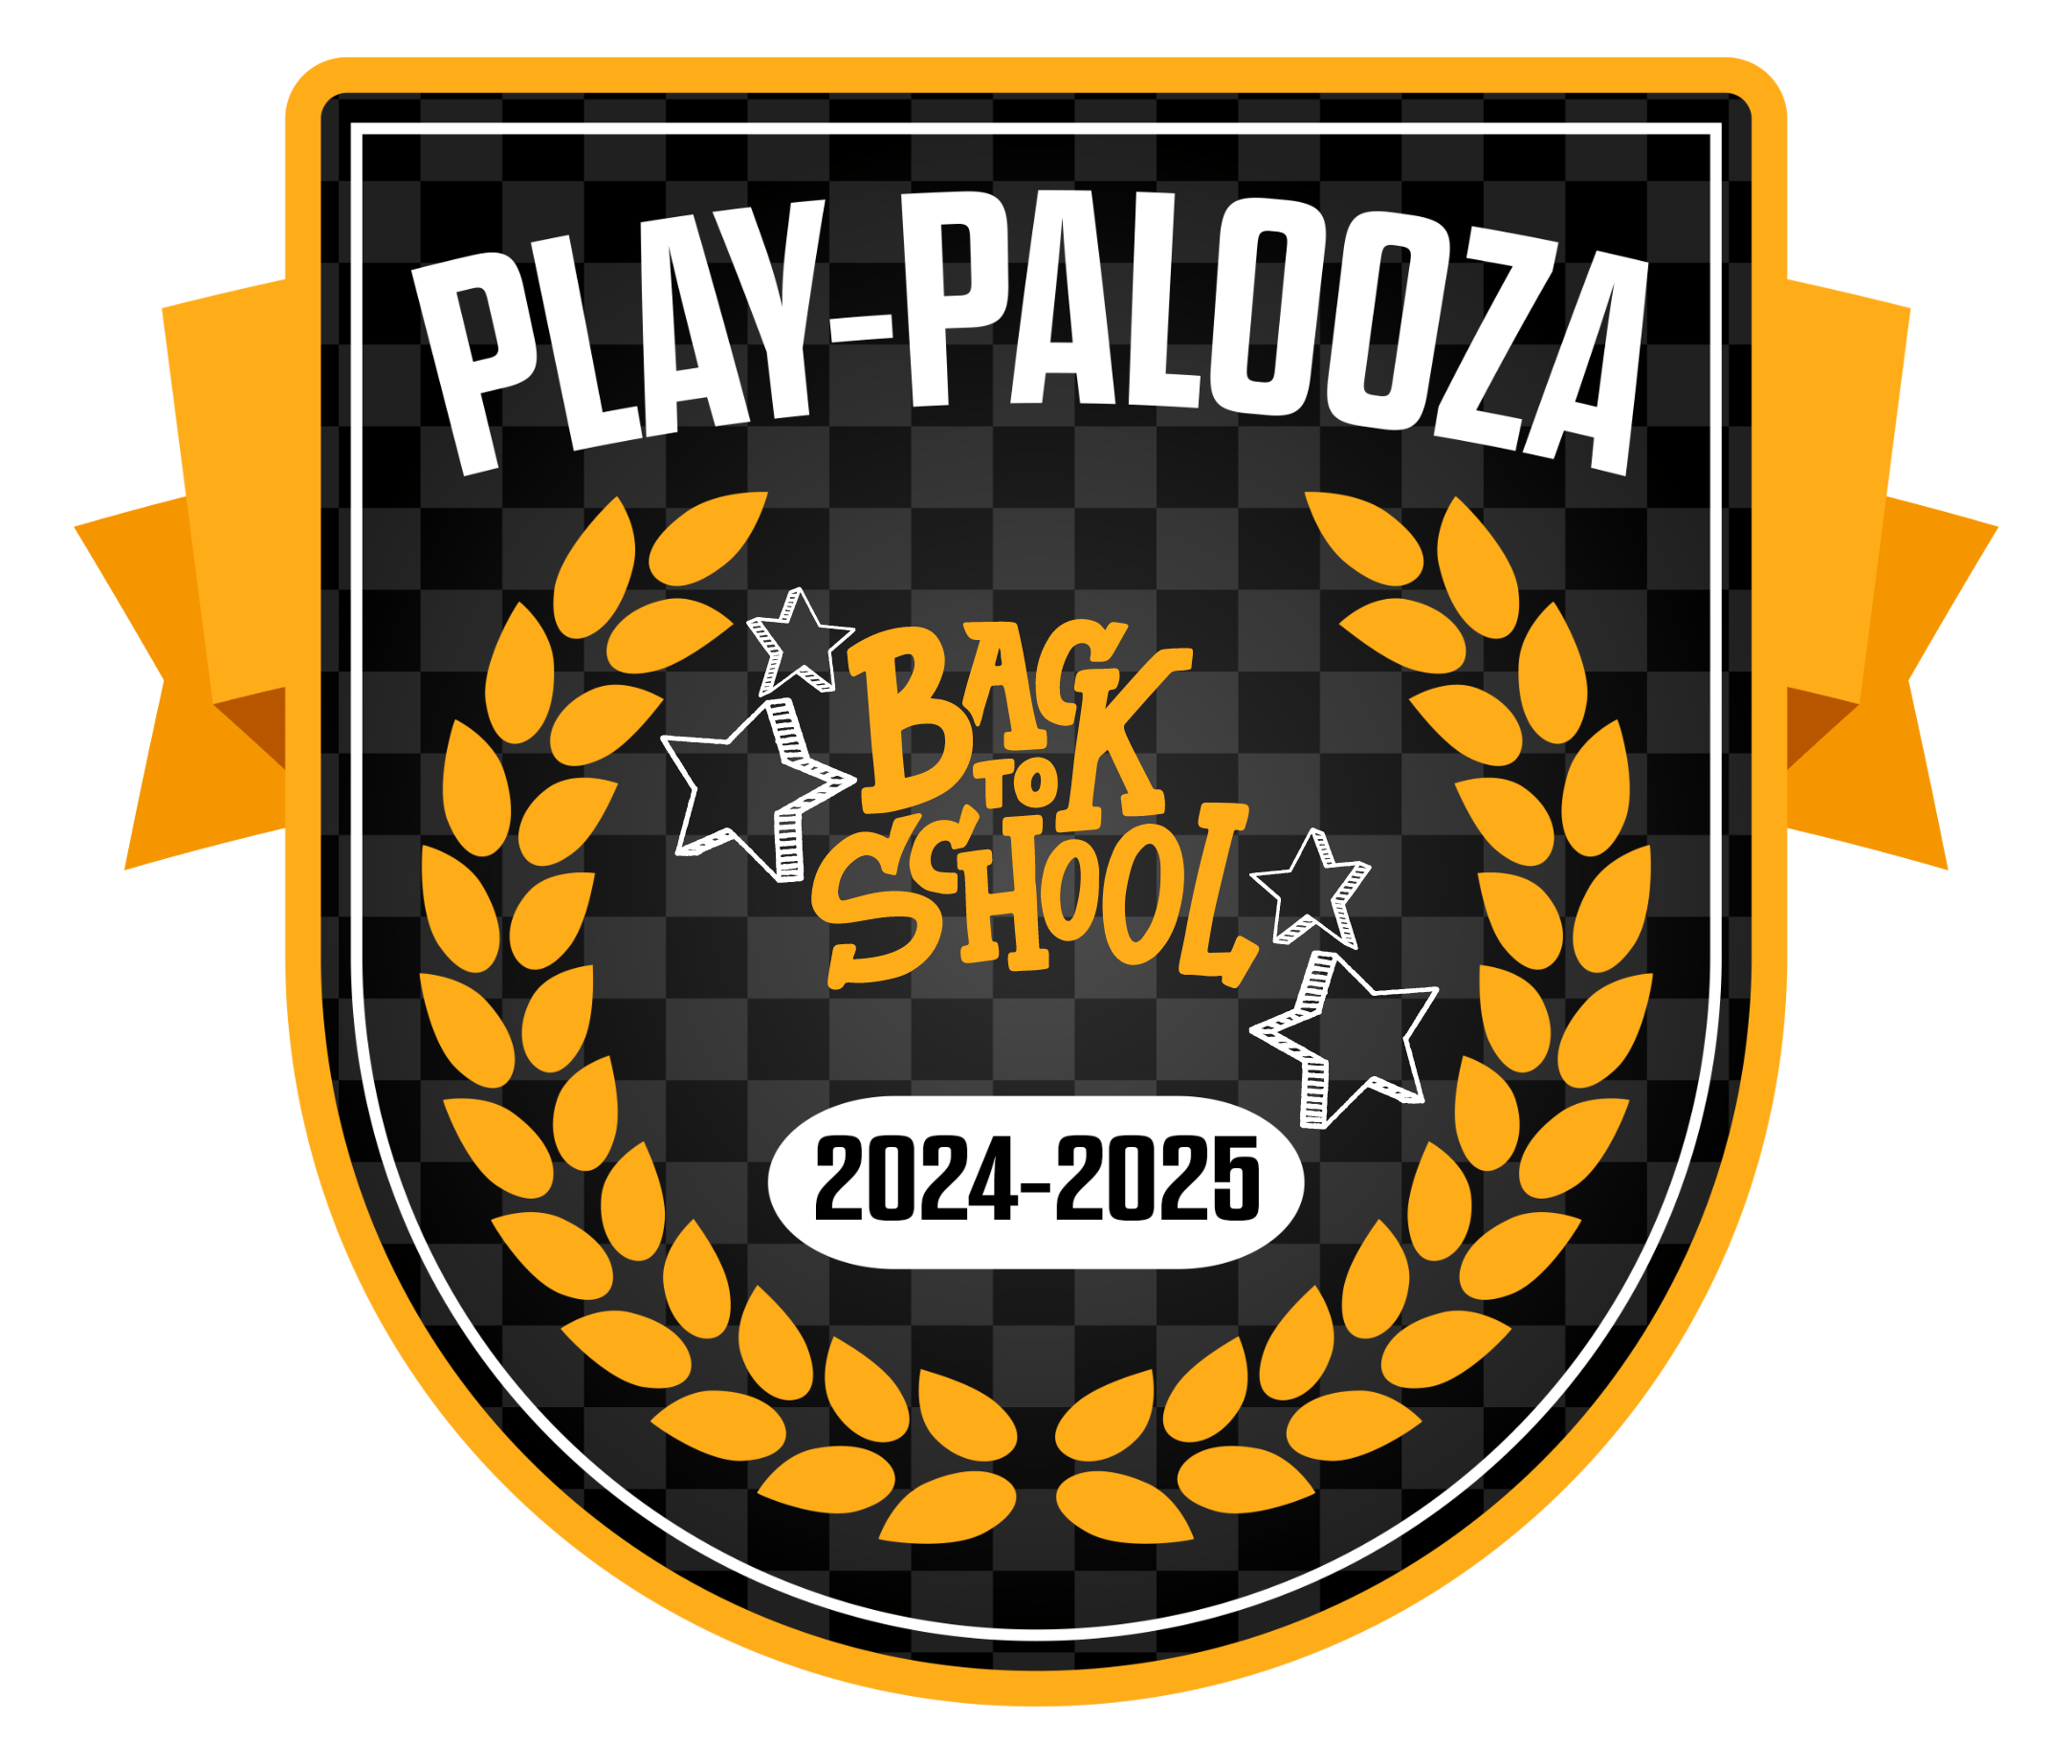 PLAYPALOOZA logo 2024 2025